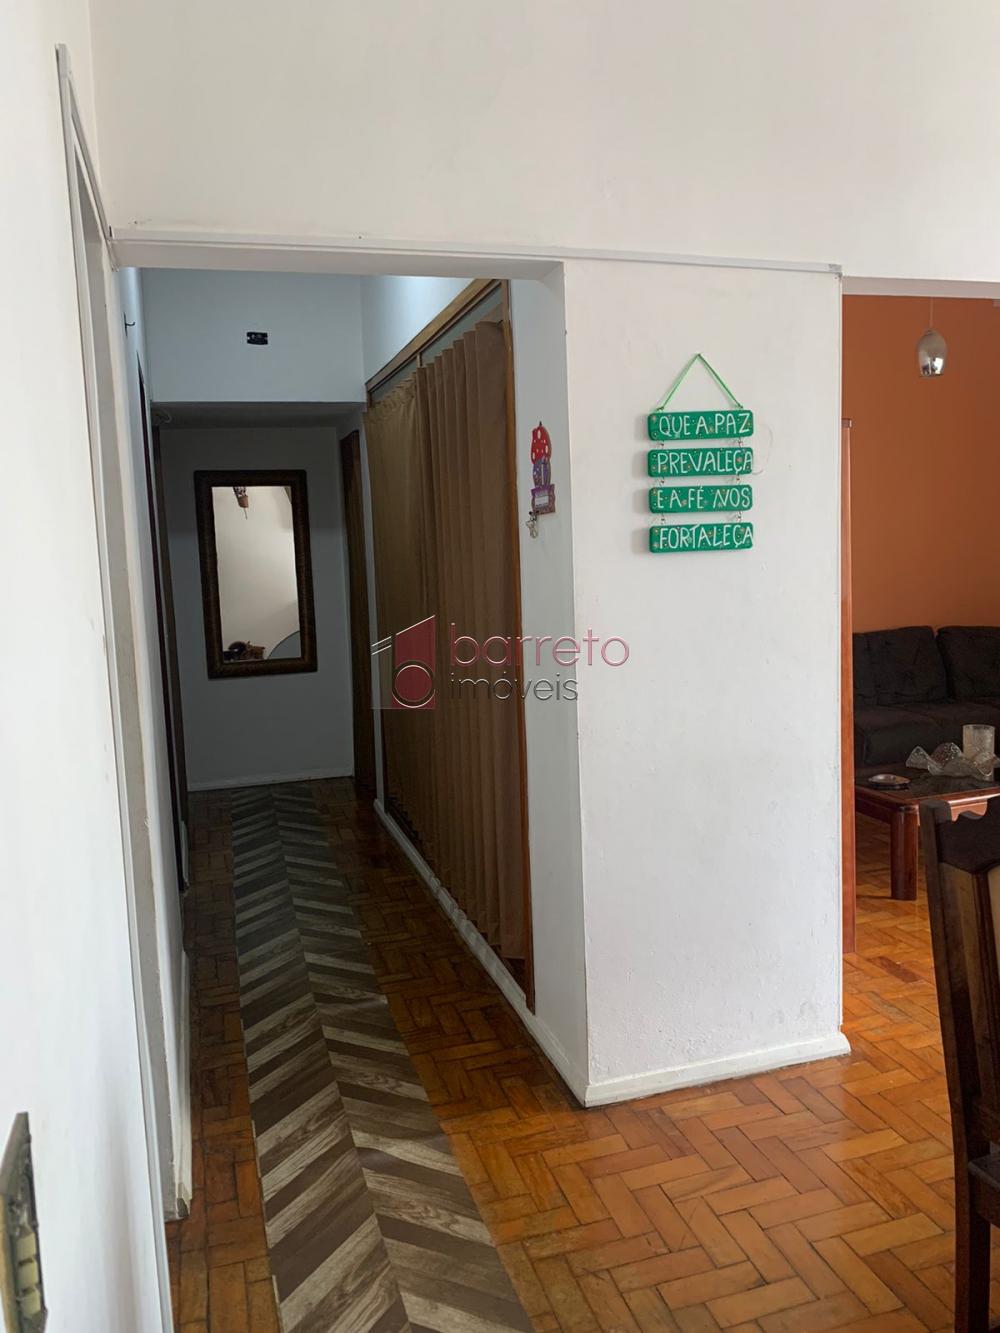 Alugar Apartamento / Padrão em Jundiaí R$ 2.500,00 - Foto 2